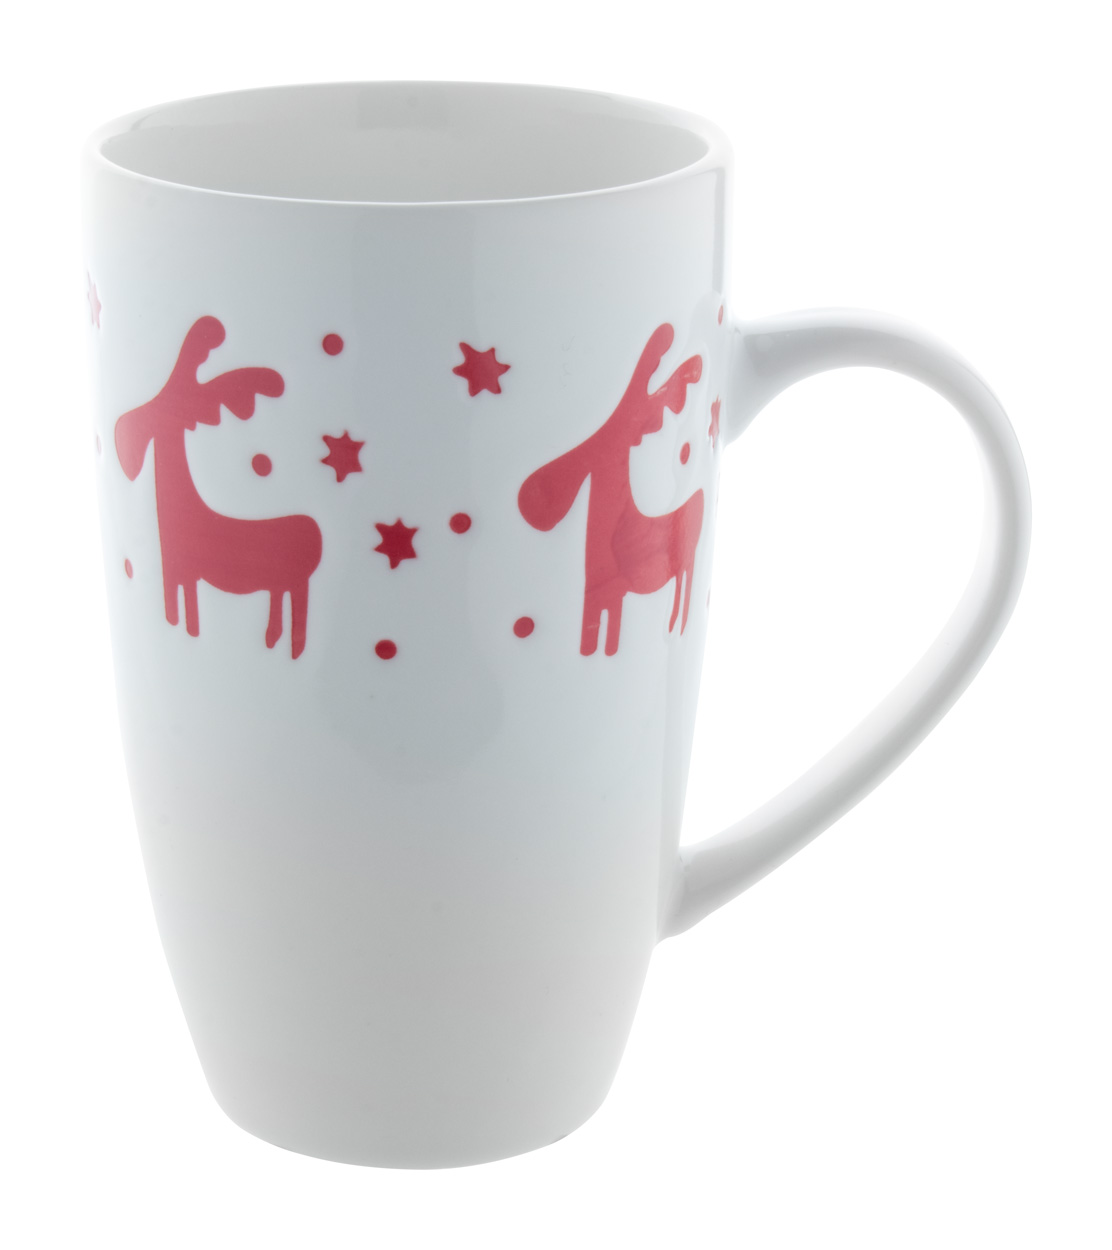 Lempaa porcelain Christmas mug - Weiß 